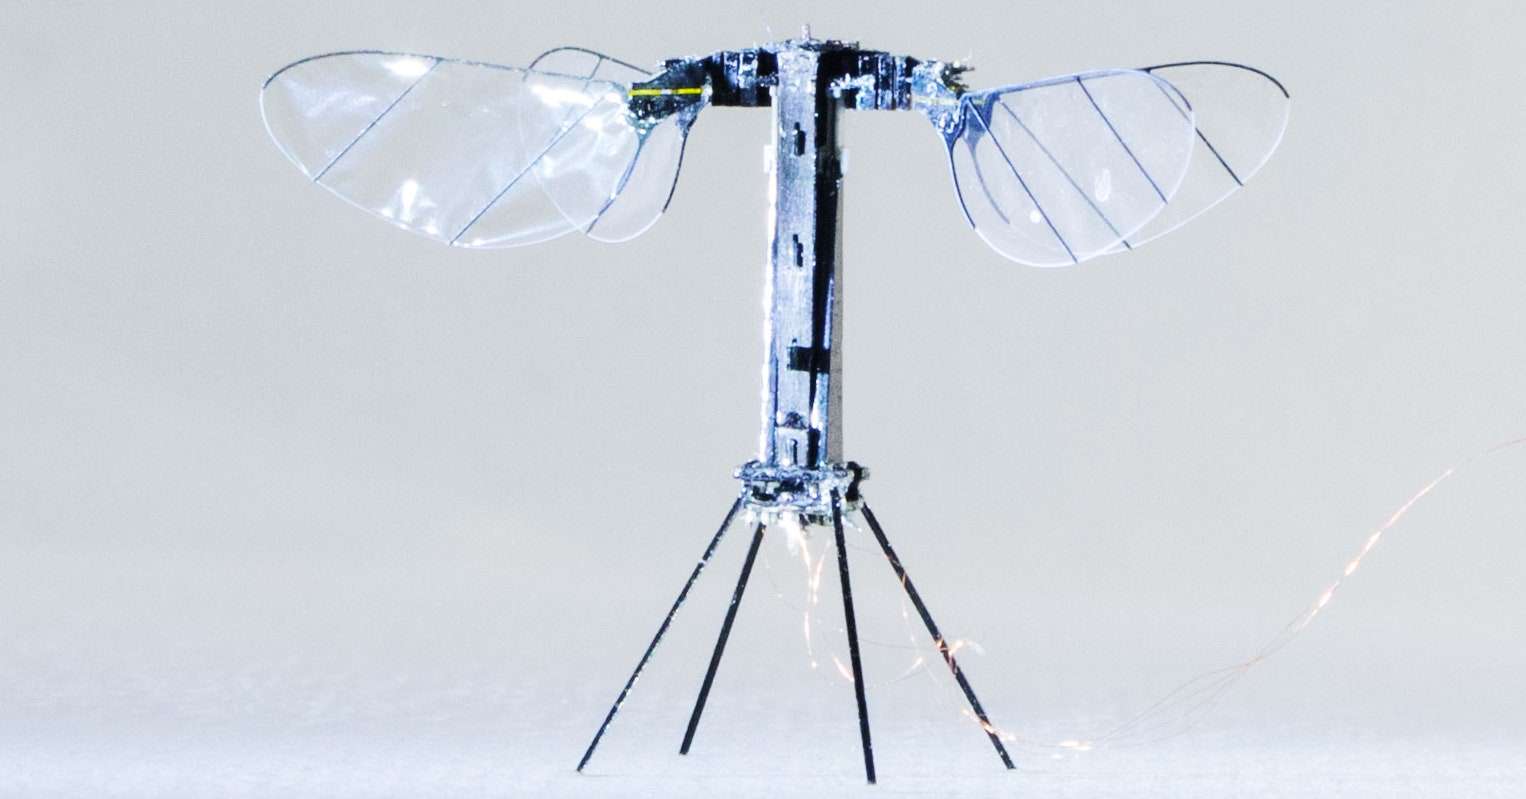 भारतीय वैज्ञानिक बना रहा कीटों से प्रेरित ड्रोन जो जगह के अनुसार खुद को सिकोड़ भी सकेगा